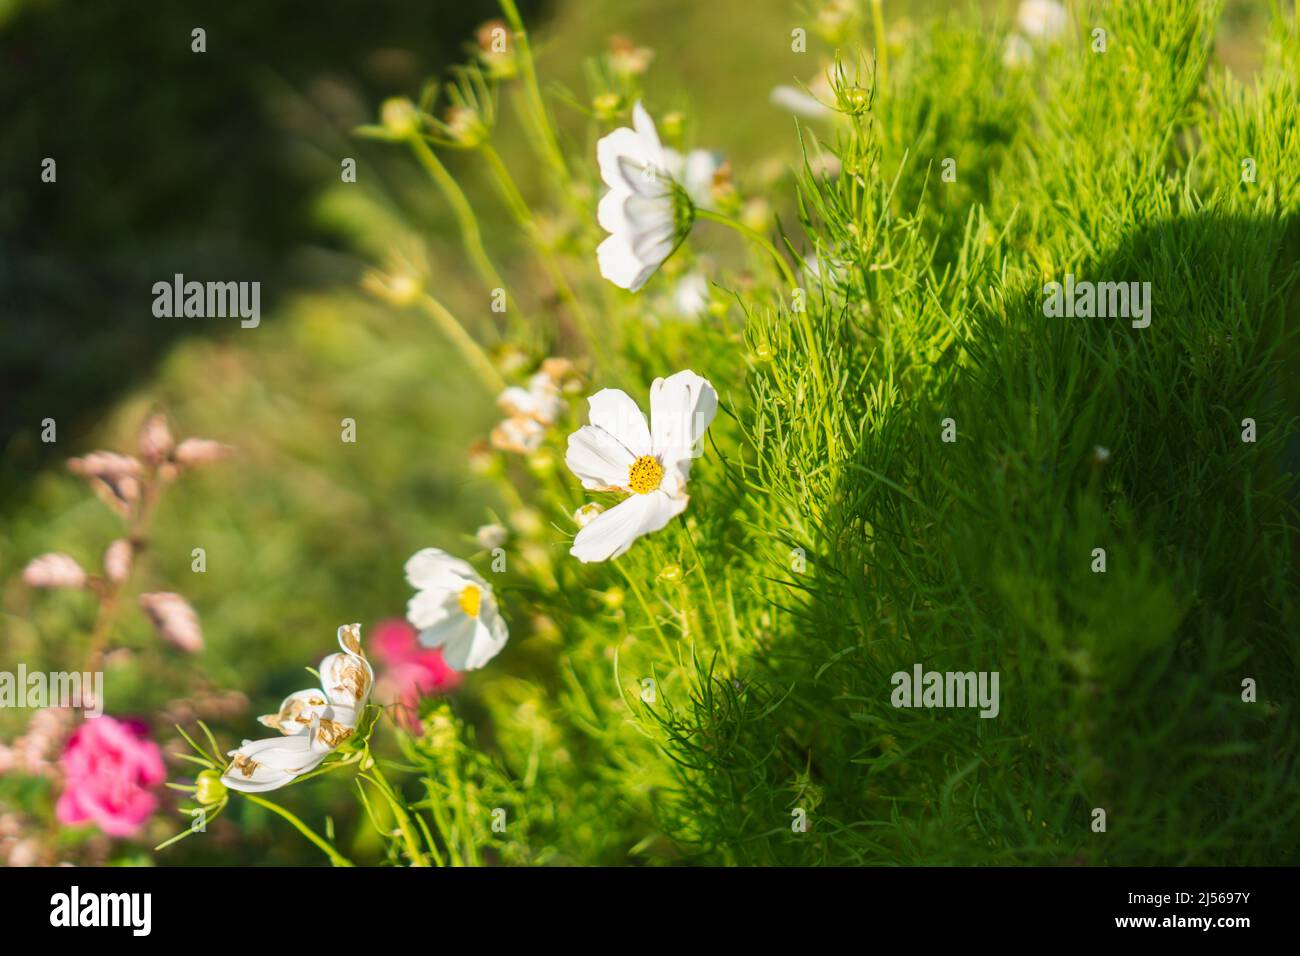 Cosmos Blume und frisches grünes Gras erstrahlt mit Morgenlicht. Stockfoto